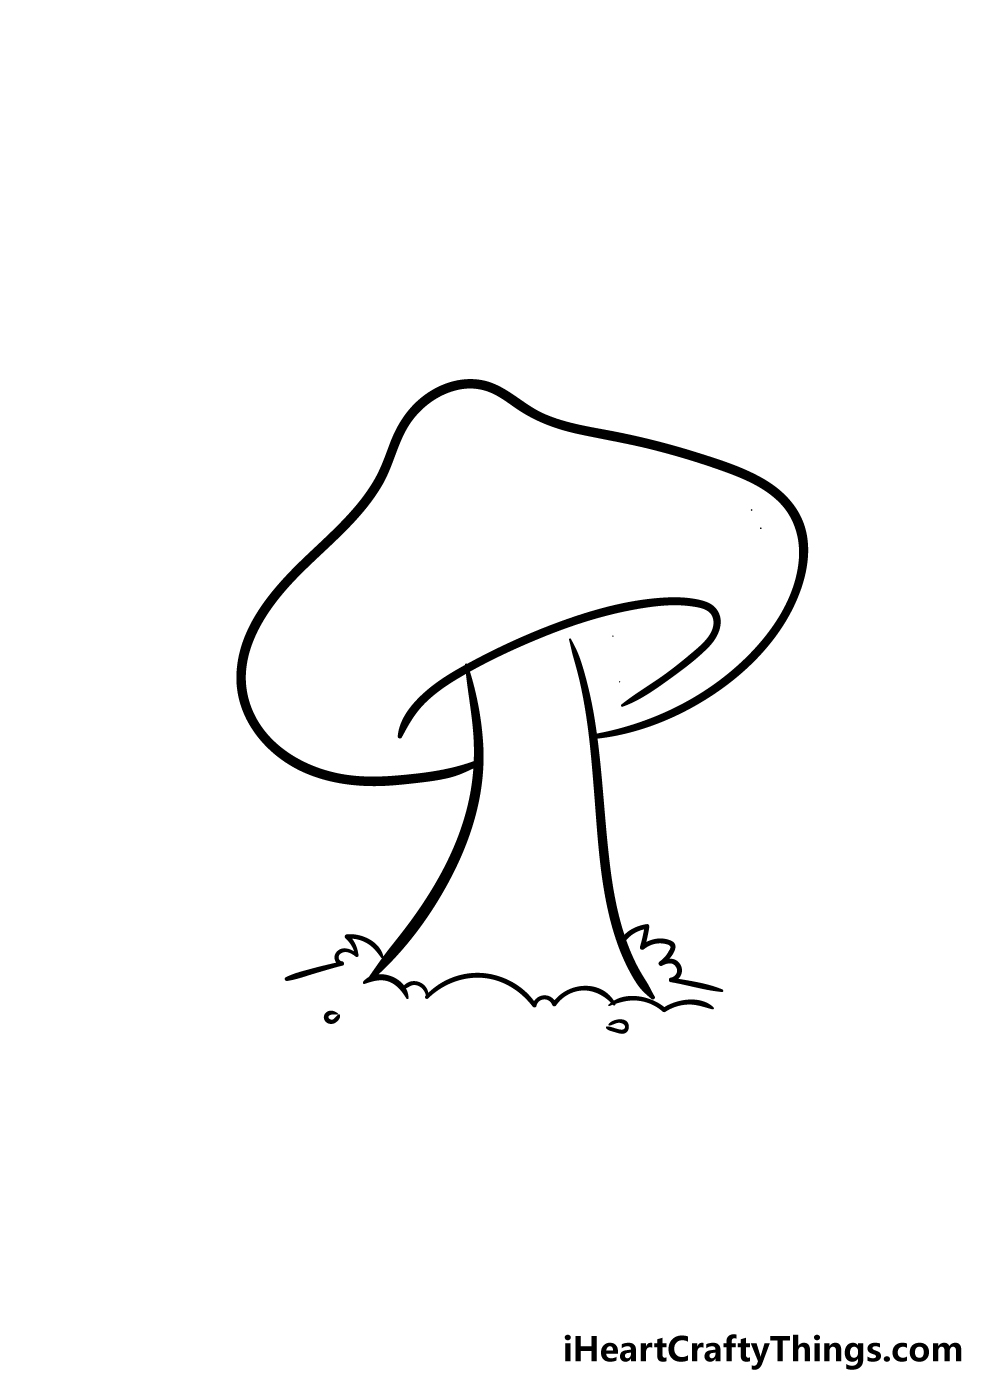 mushroom drawing step 4